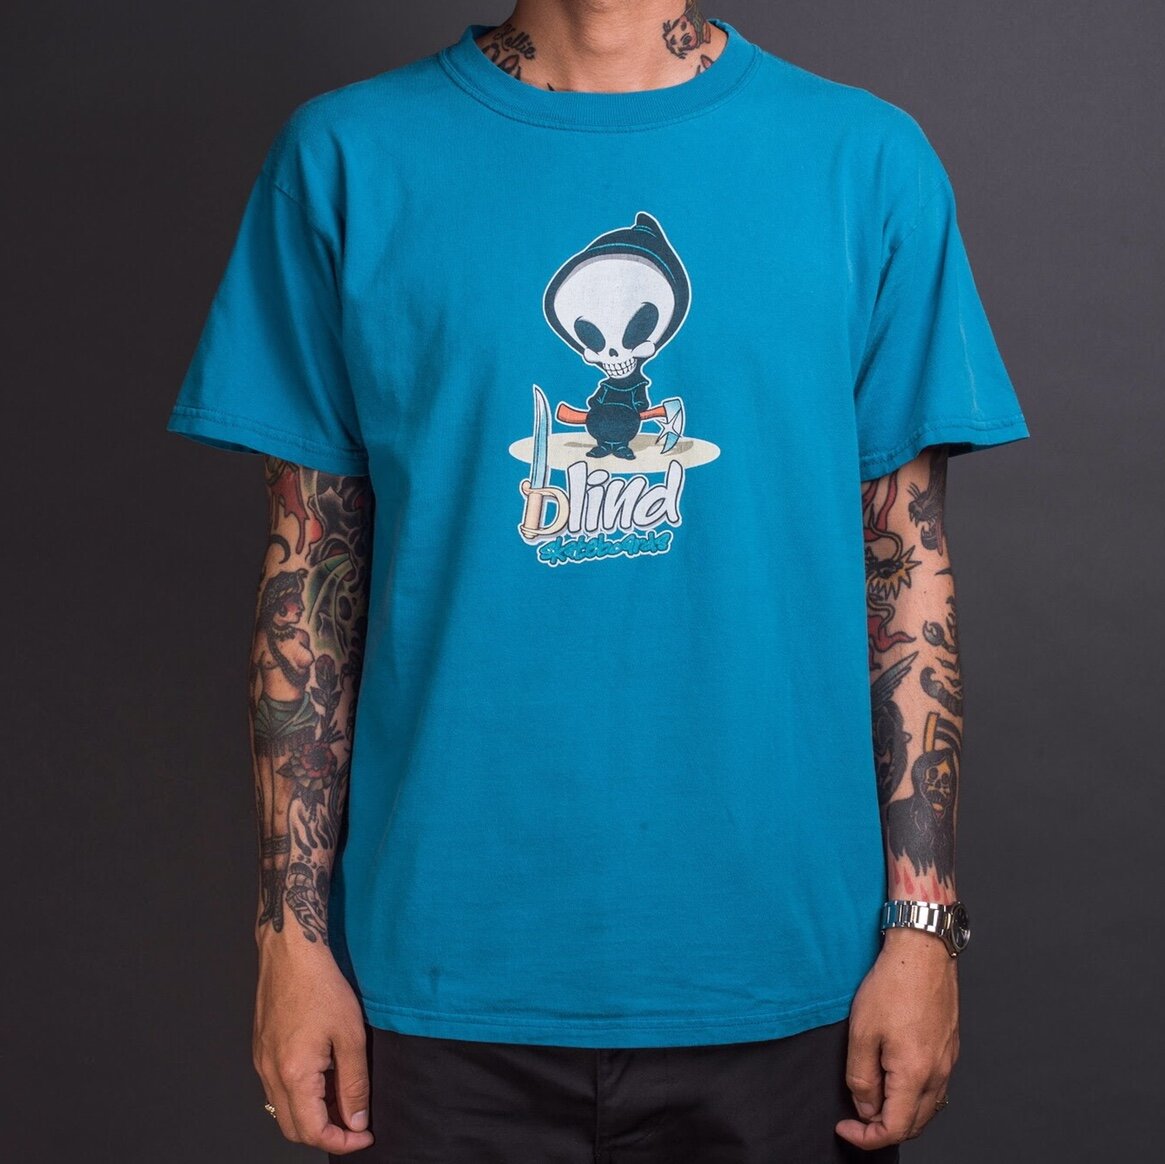 Vintage 90's Blind Skateboards T-Shirt – Mills Vintage USA